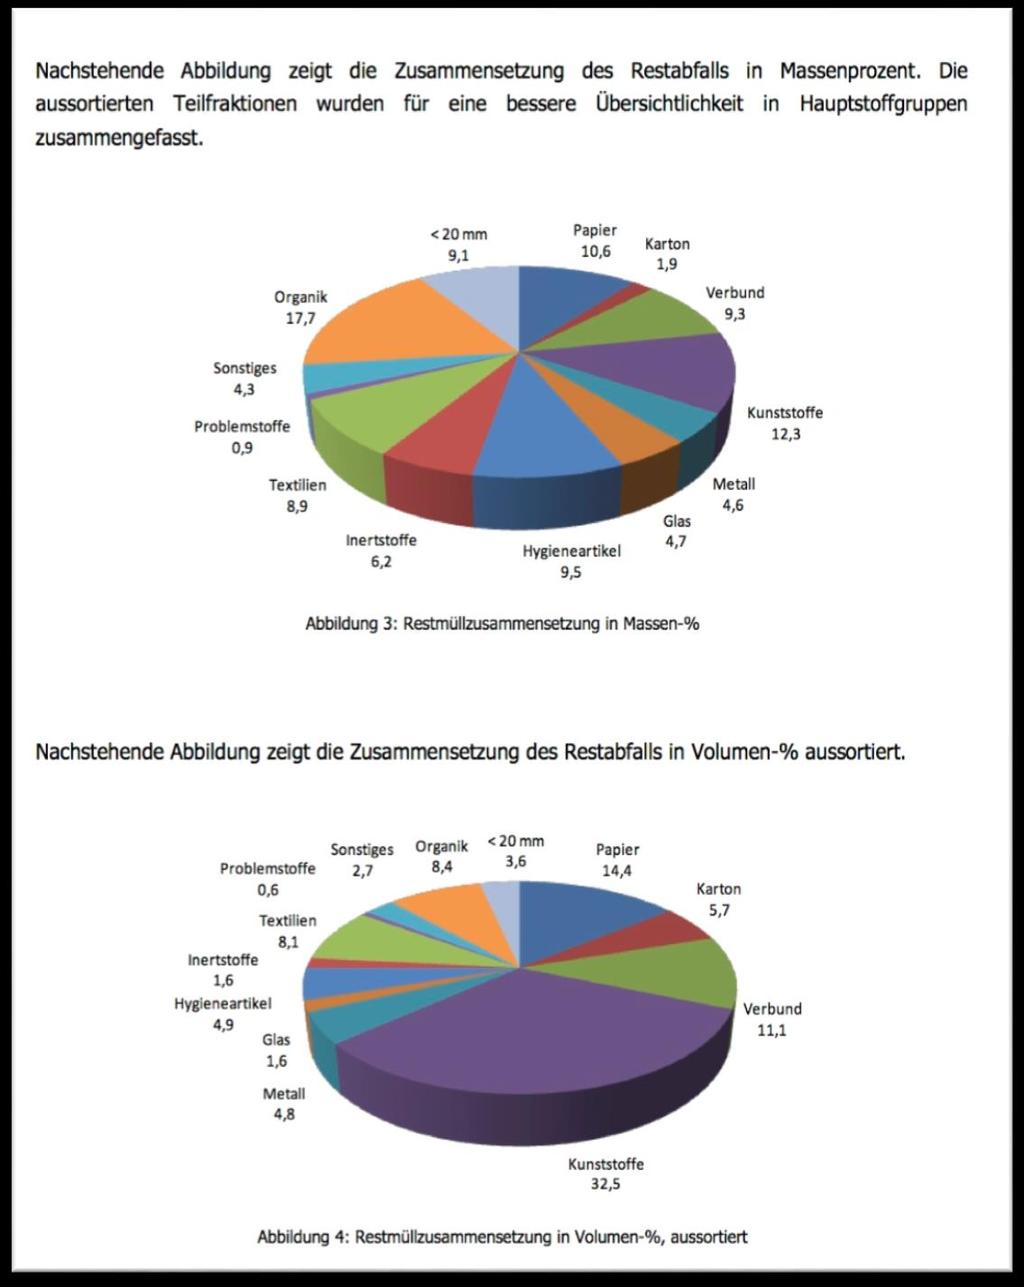 3.5 Restmüllanalyse des Landes 2012/2013 Ende 2012, Anfang 2013 führte das Land Steiermark wieder eine umfassende Restmüllanalyse in repräsentativen steirischen Gemeinden durch.